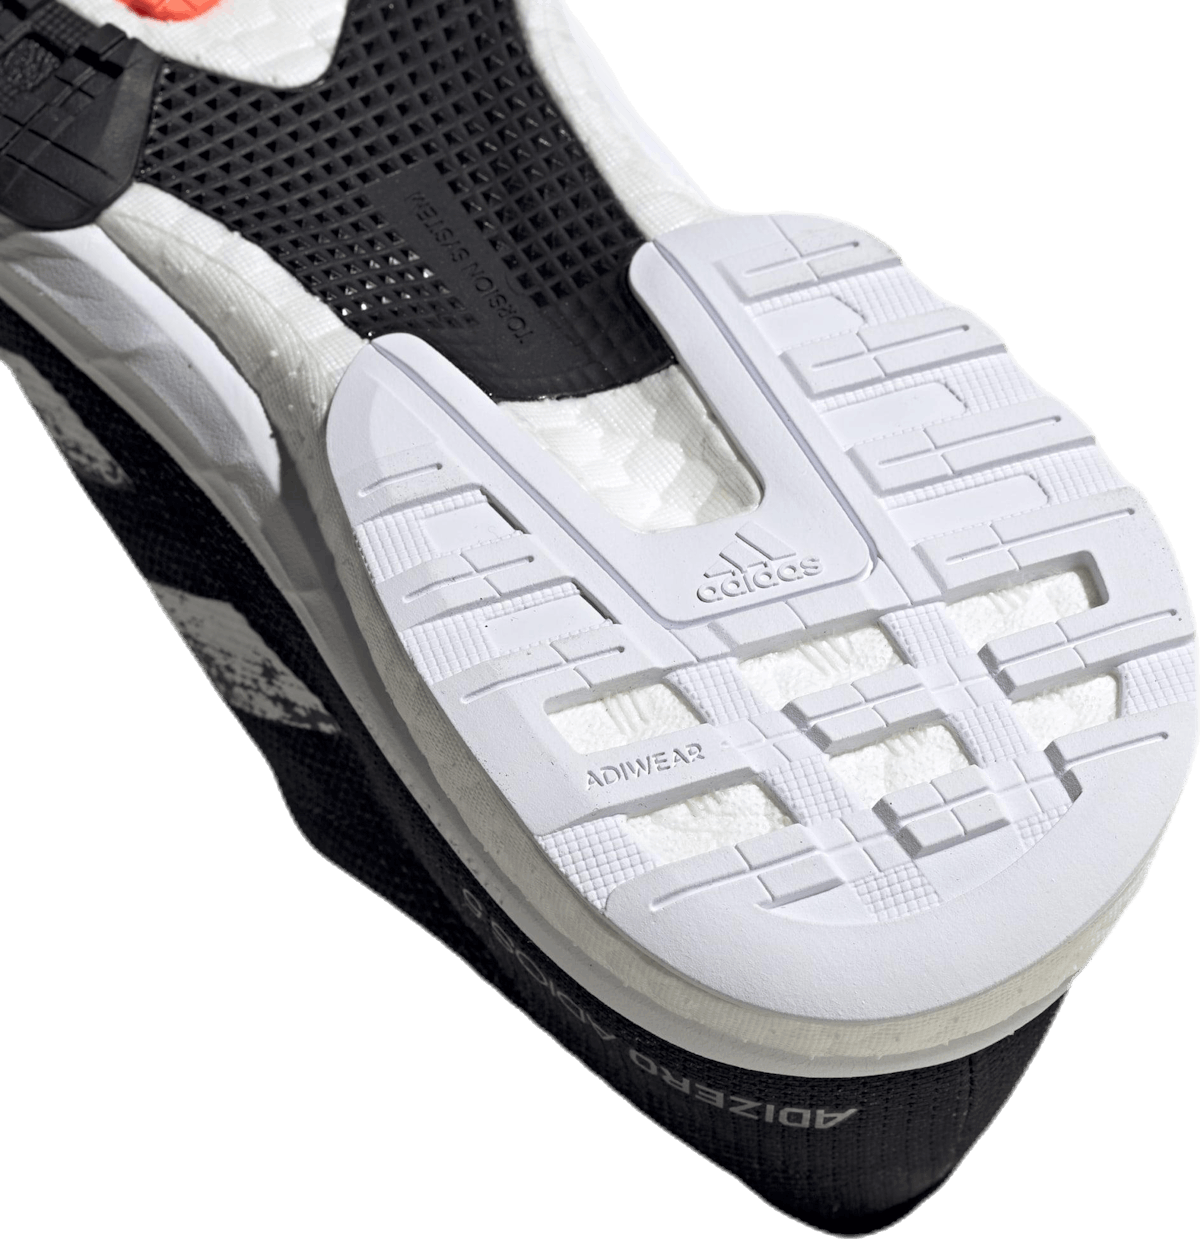 Adizero Adios 5 Shoes Core Black / Cloud White / Signal Coral